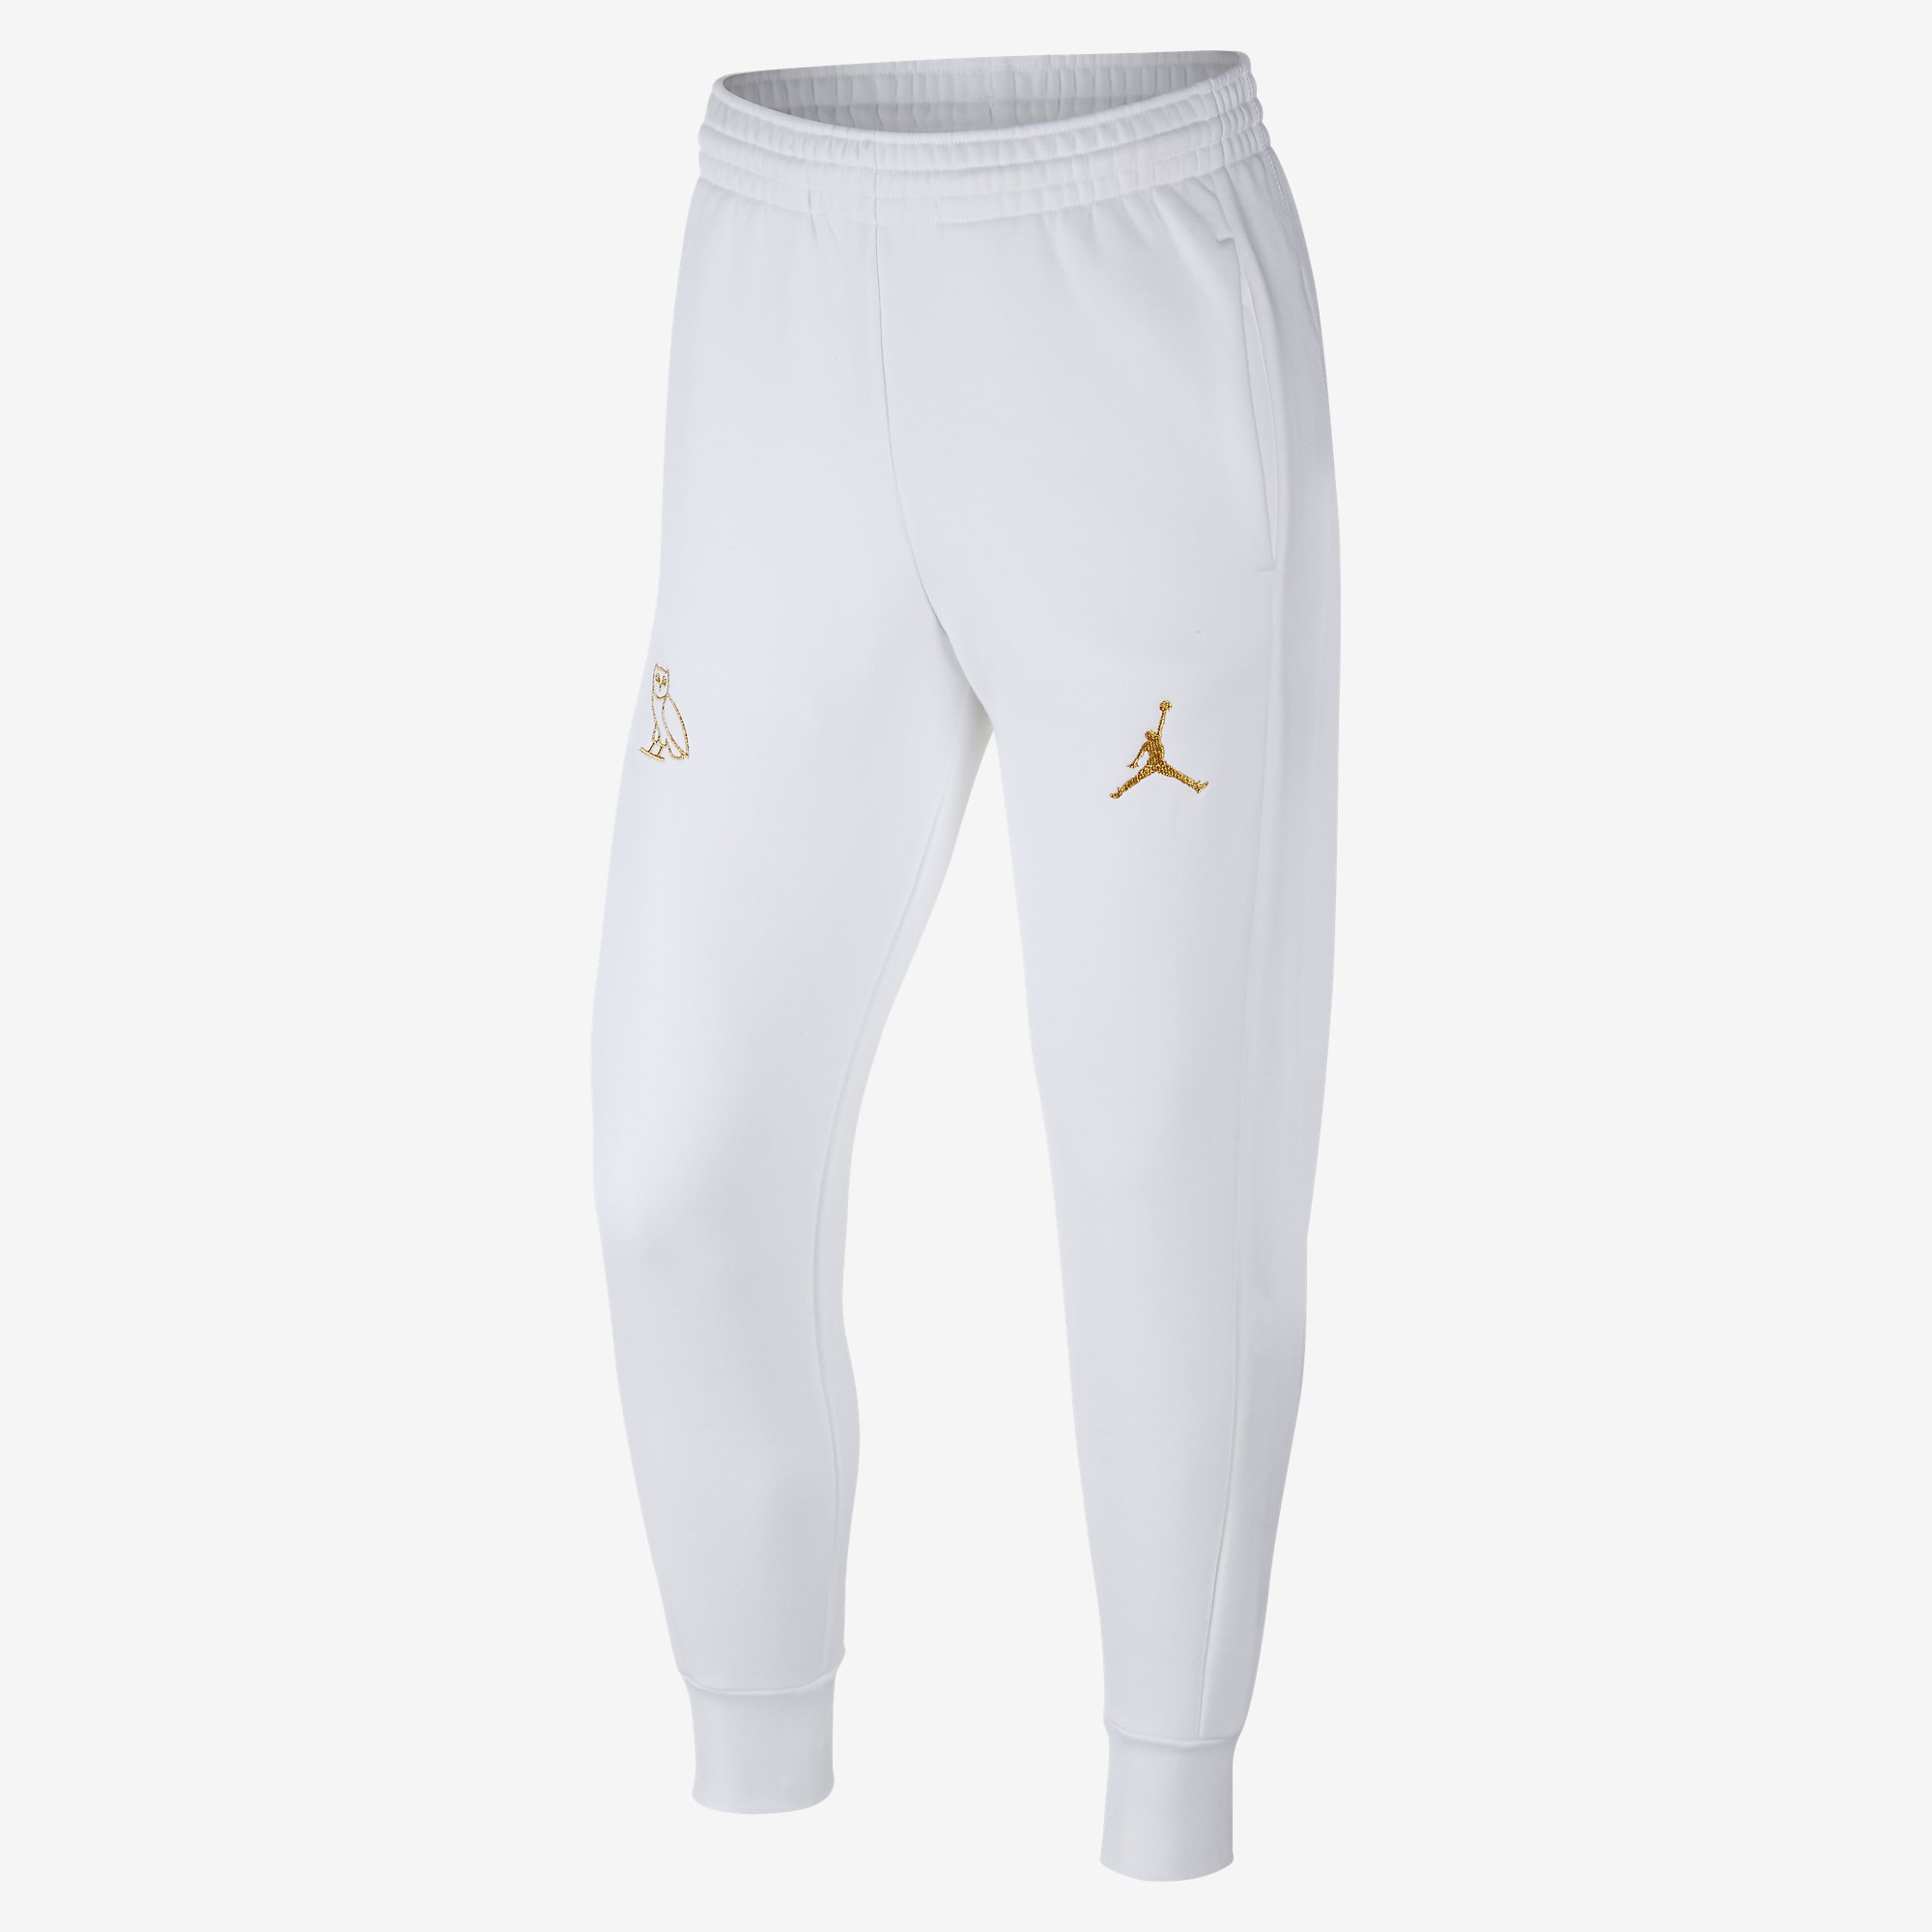 Drake OVO Air Jordan Sweatpants